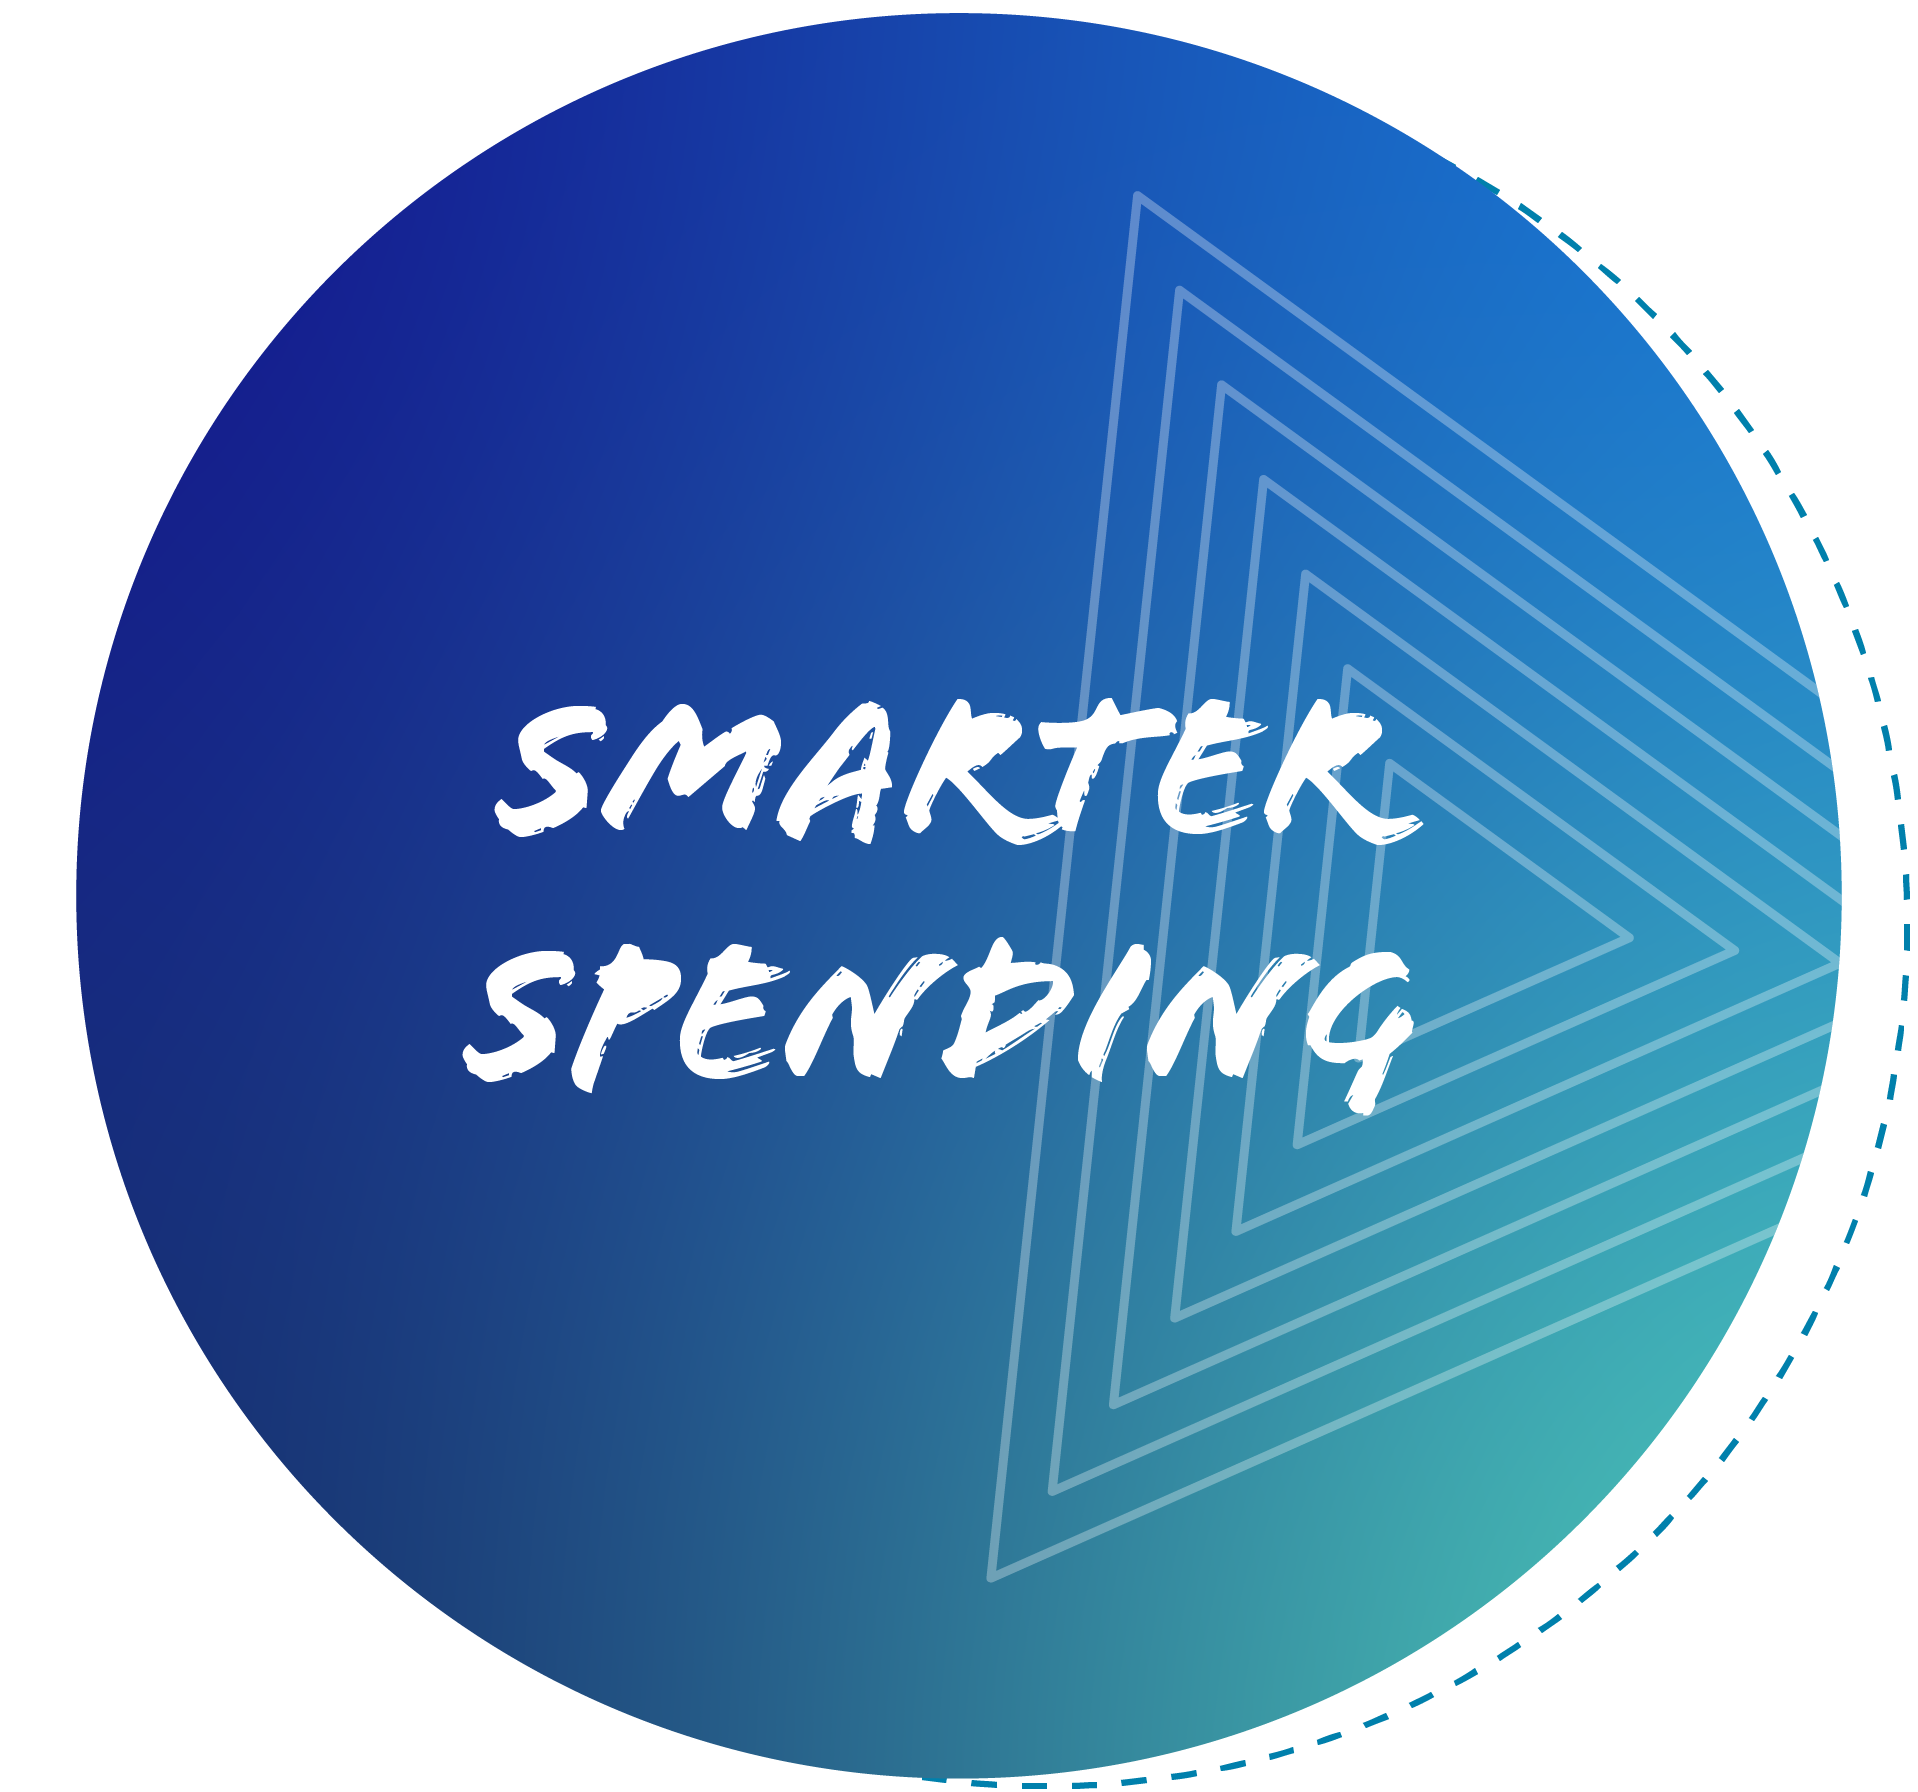 smarter spending